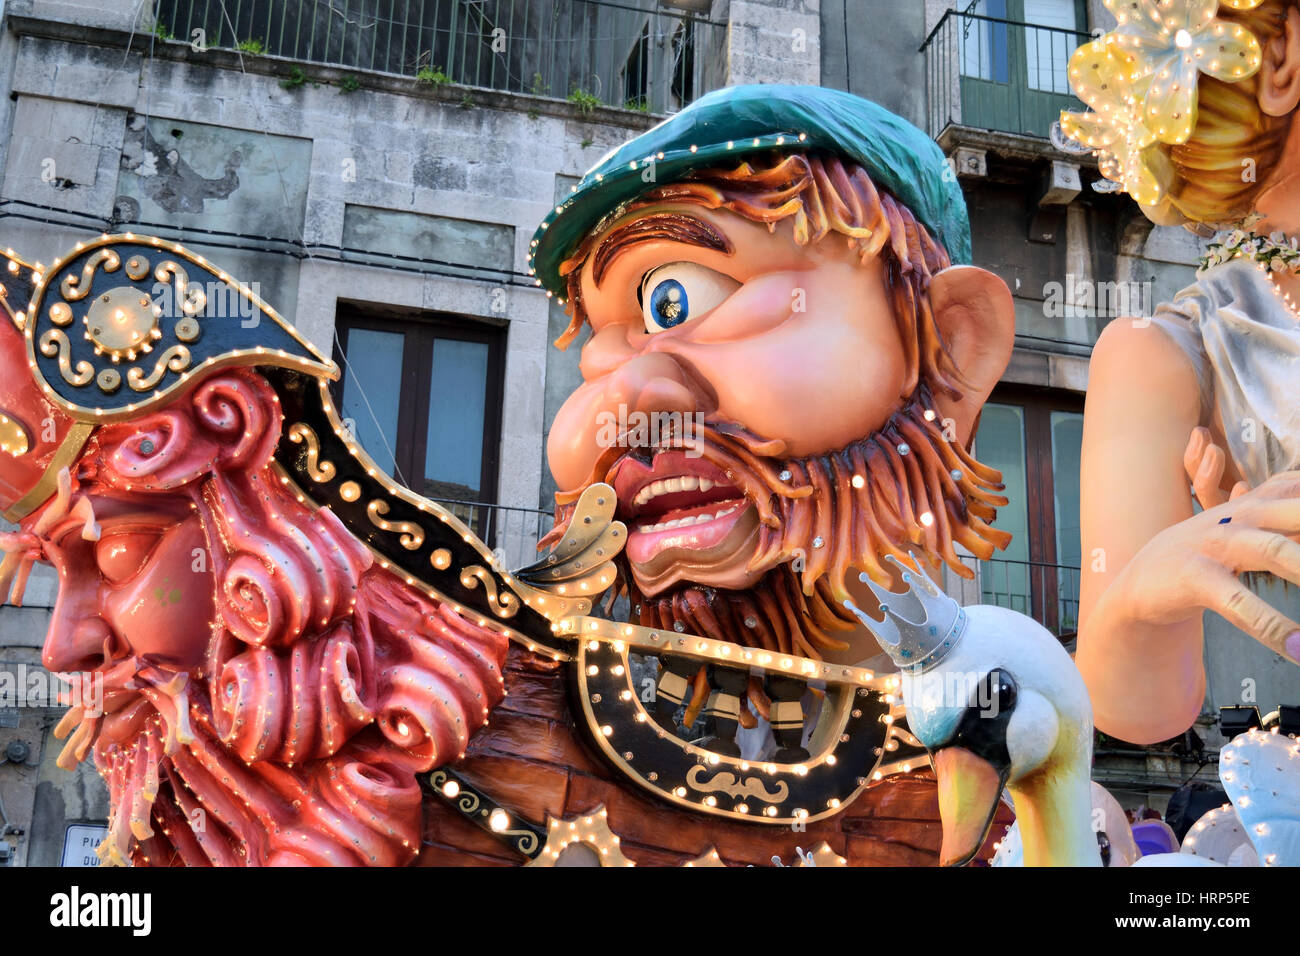 Acireale (CT), Italie - Février 28, 2017 : détail d'un char allégorique représentant la figure mythologique de Polyphème, pendant le défilé du carnaval Banque D'Images